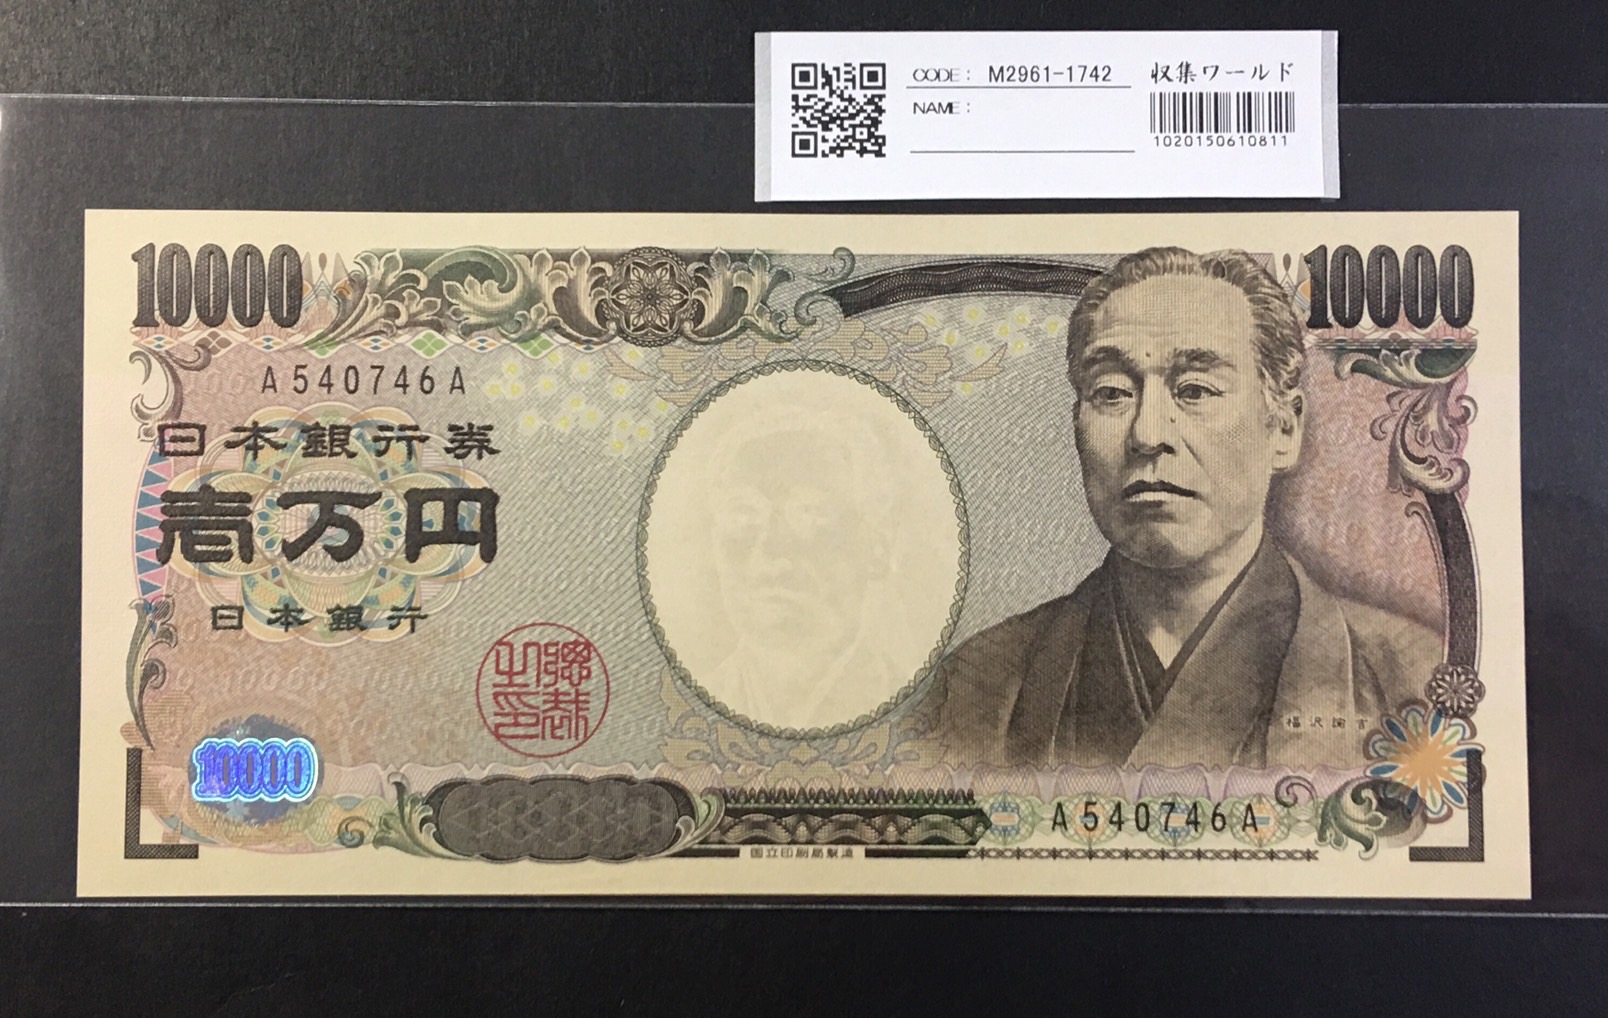 新福沢 1万円紙幣 2004年国立銘 黒色 珍番 A540746A 未使用